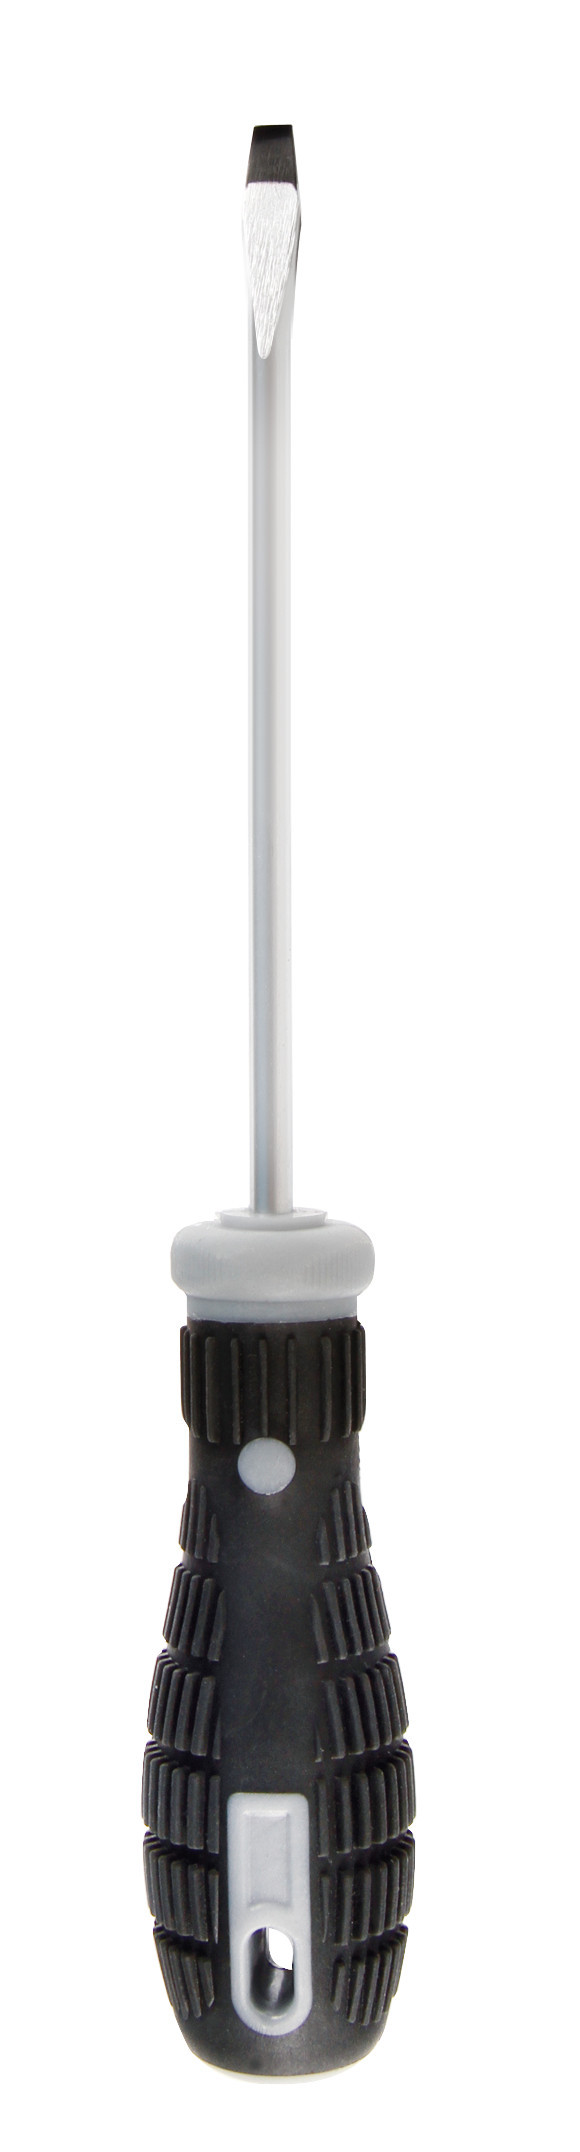 Surubelnita cu cap drept Crom-Vanadiu Lampa 1buc - 1x5,5x125mm thumb